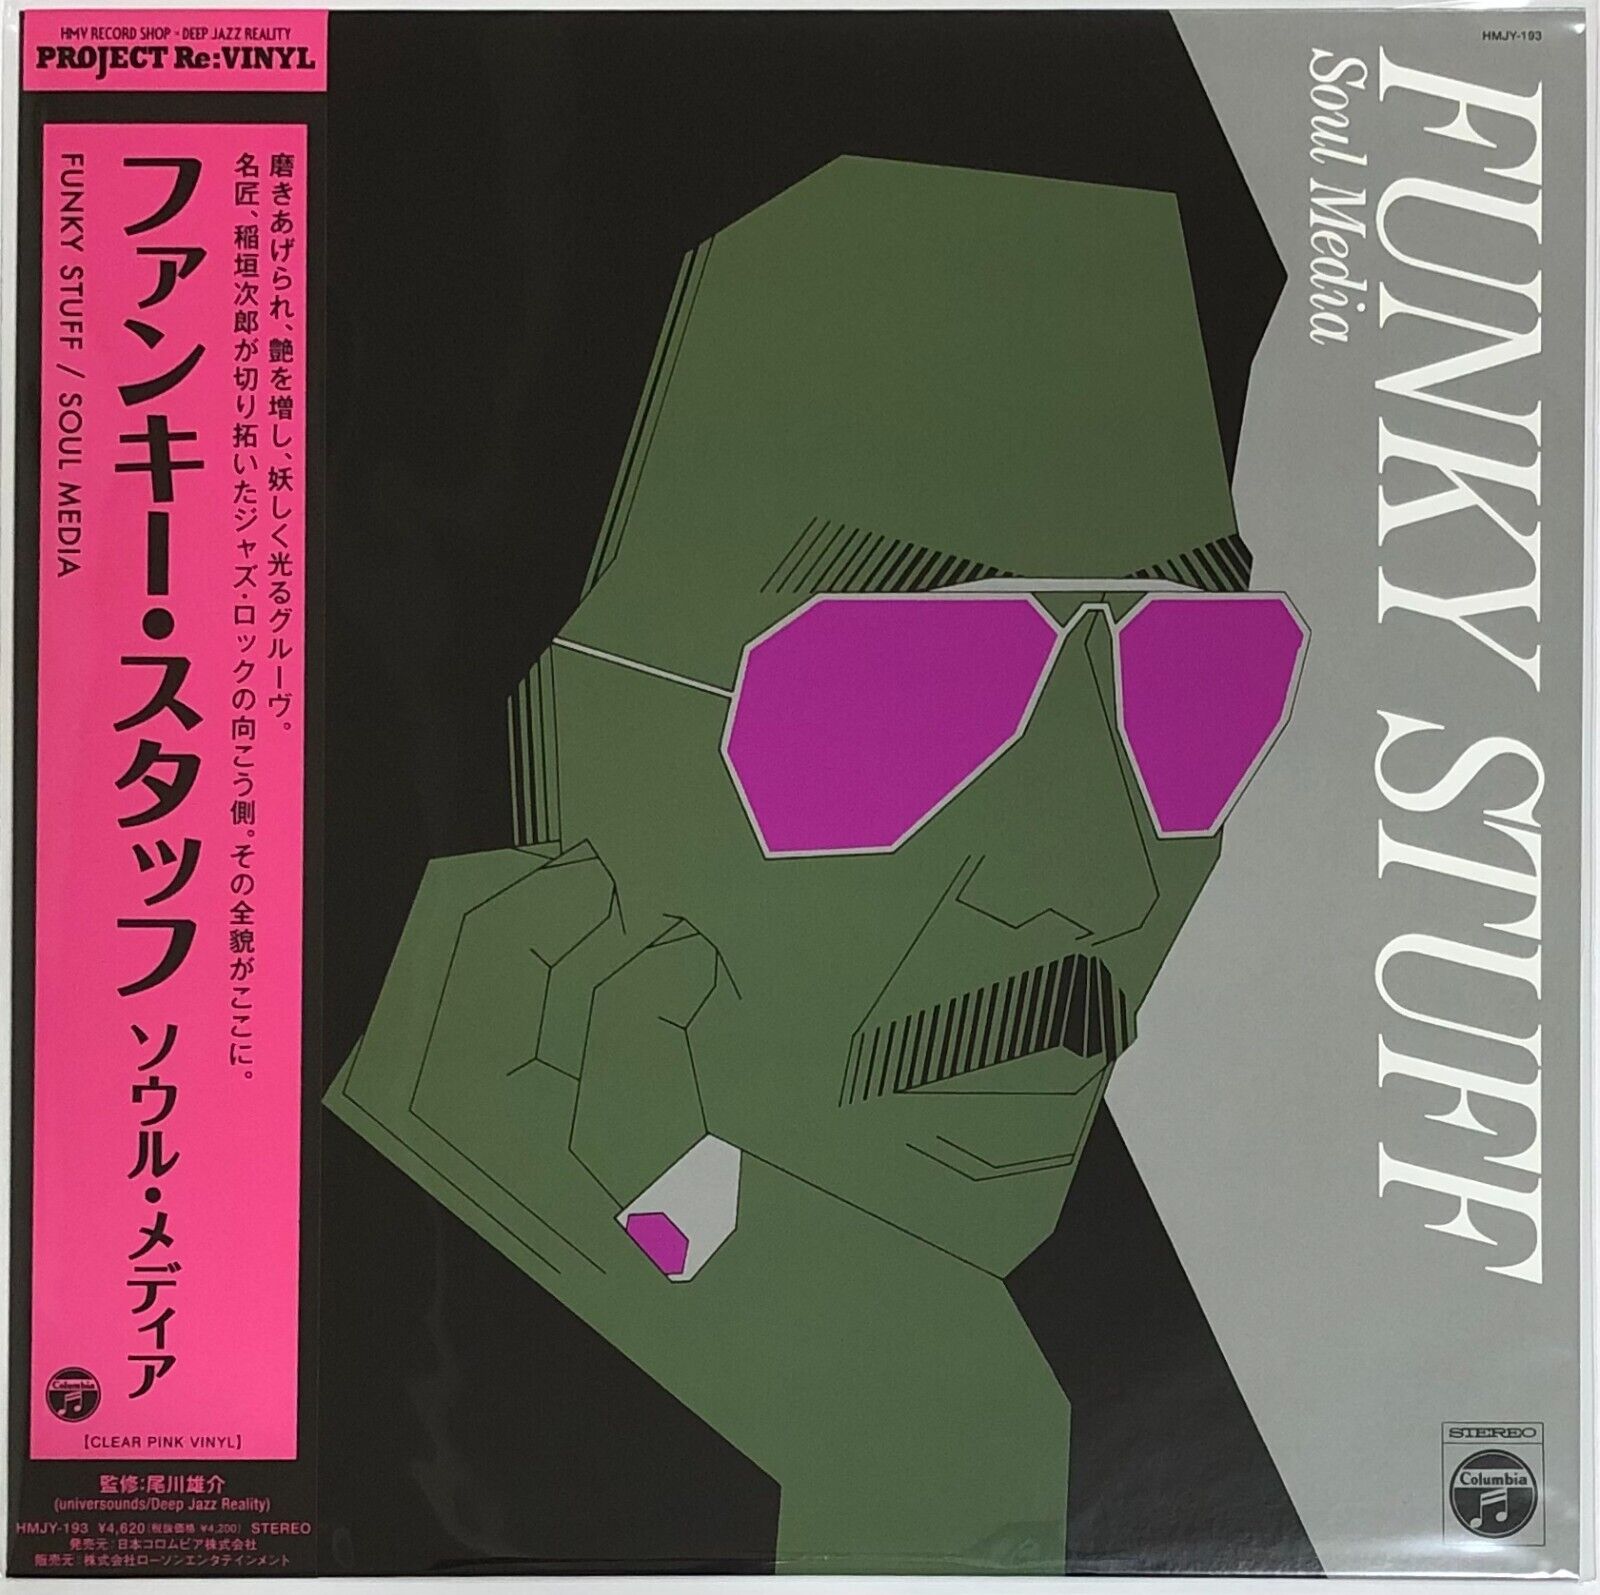 Jiro Inagaki & Soul Media / Funky Stuff 1975 Clear Pink Vinyl LP Japan Jazz